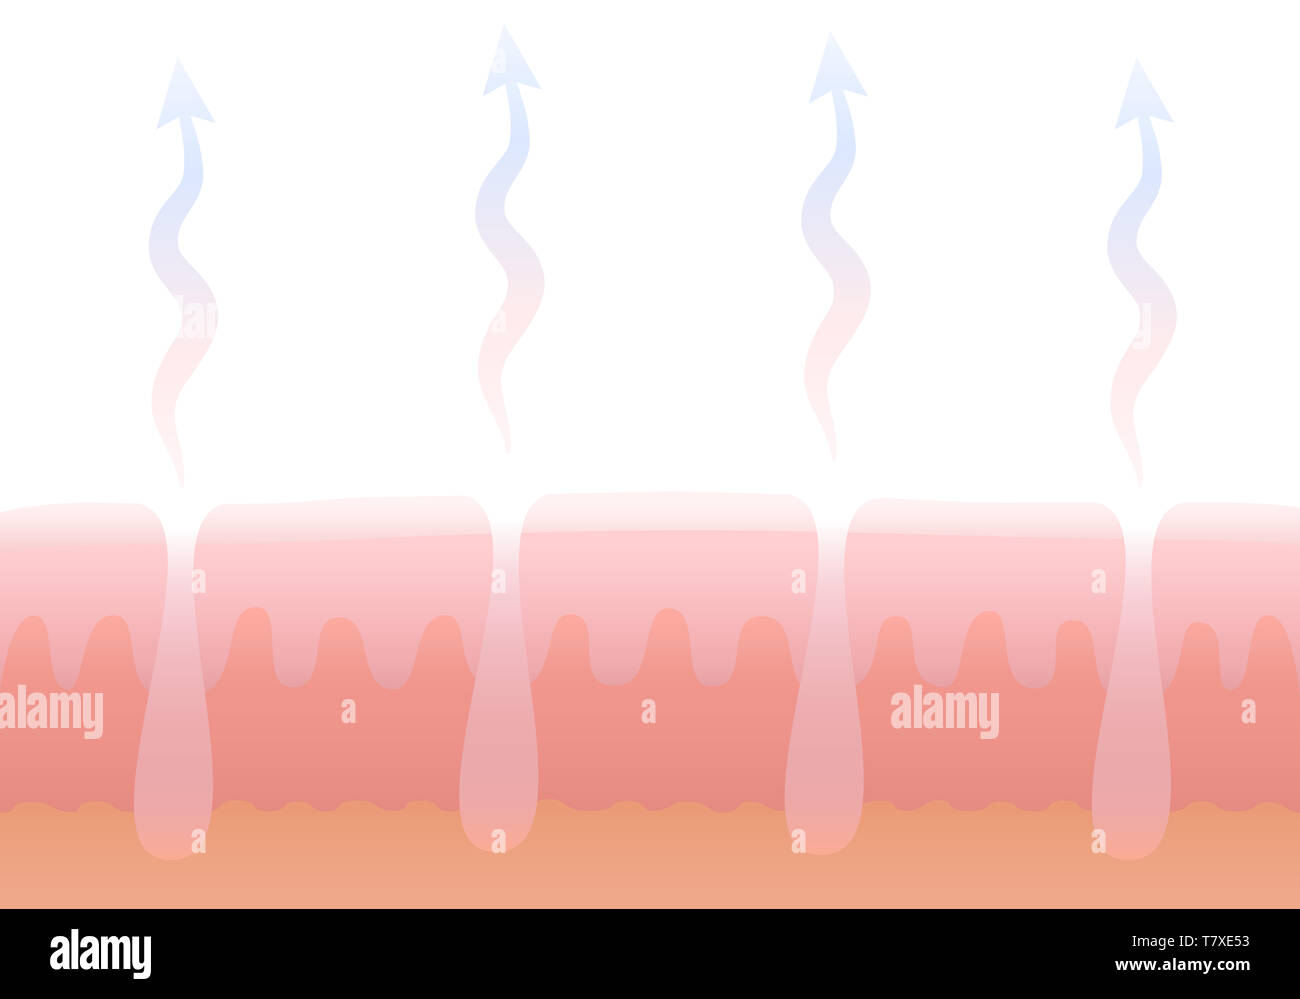 Umano la respirazione cutanea. La respirazione della pelle. Sezione schematica illustrazione del derma con pori e il suo scambio di gas. Foto Stock